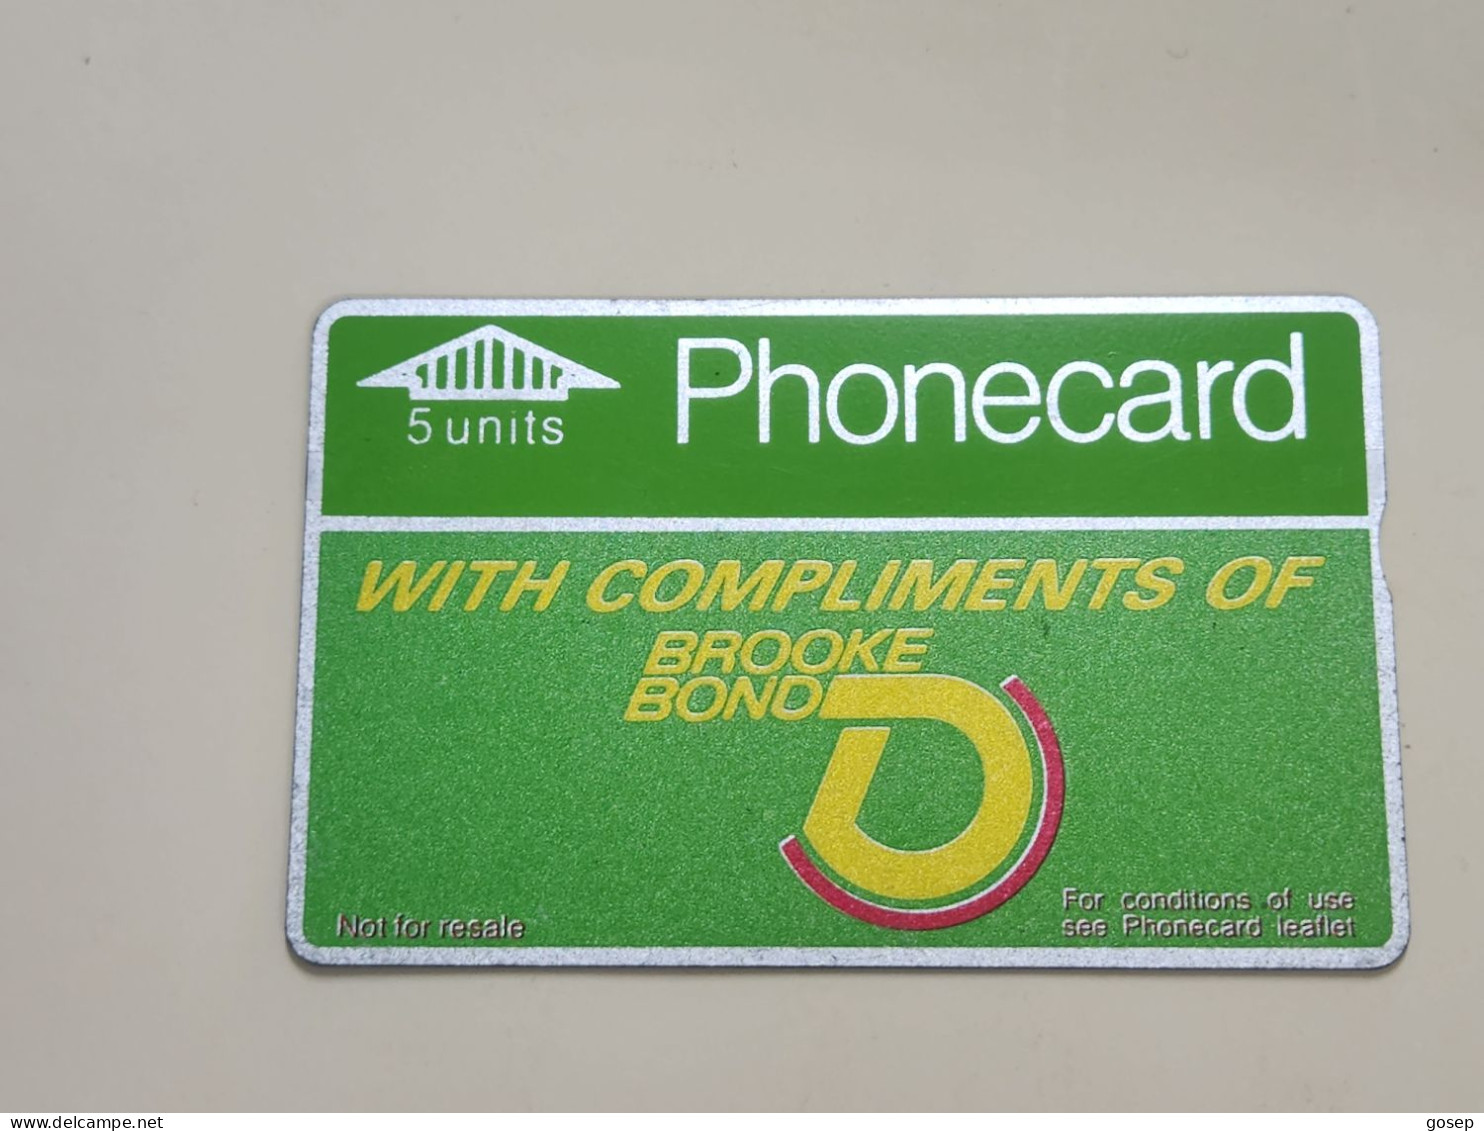 United Kingdom-(BTA009)-BROOKE BOND A-(5units)-(18)-(801A72093)-price Cataloge10.00£-used Card+1card Prepiad Free - BT Werbezwecke